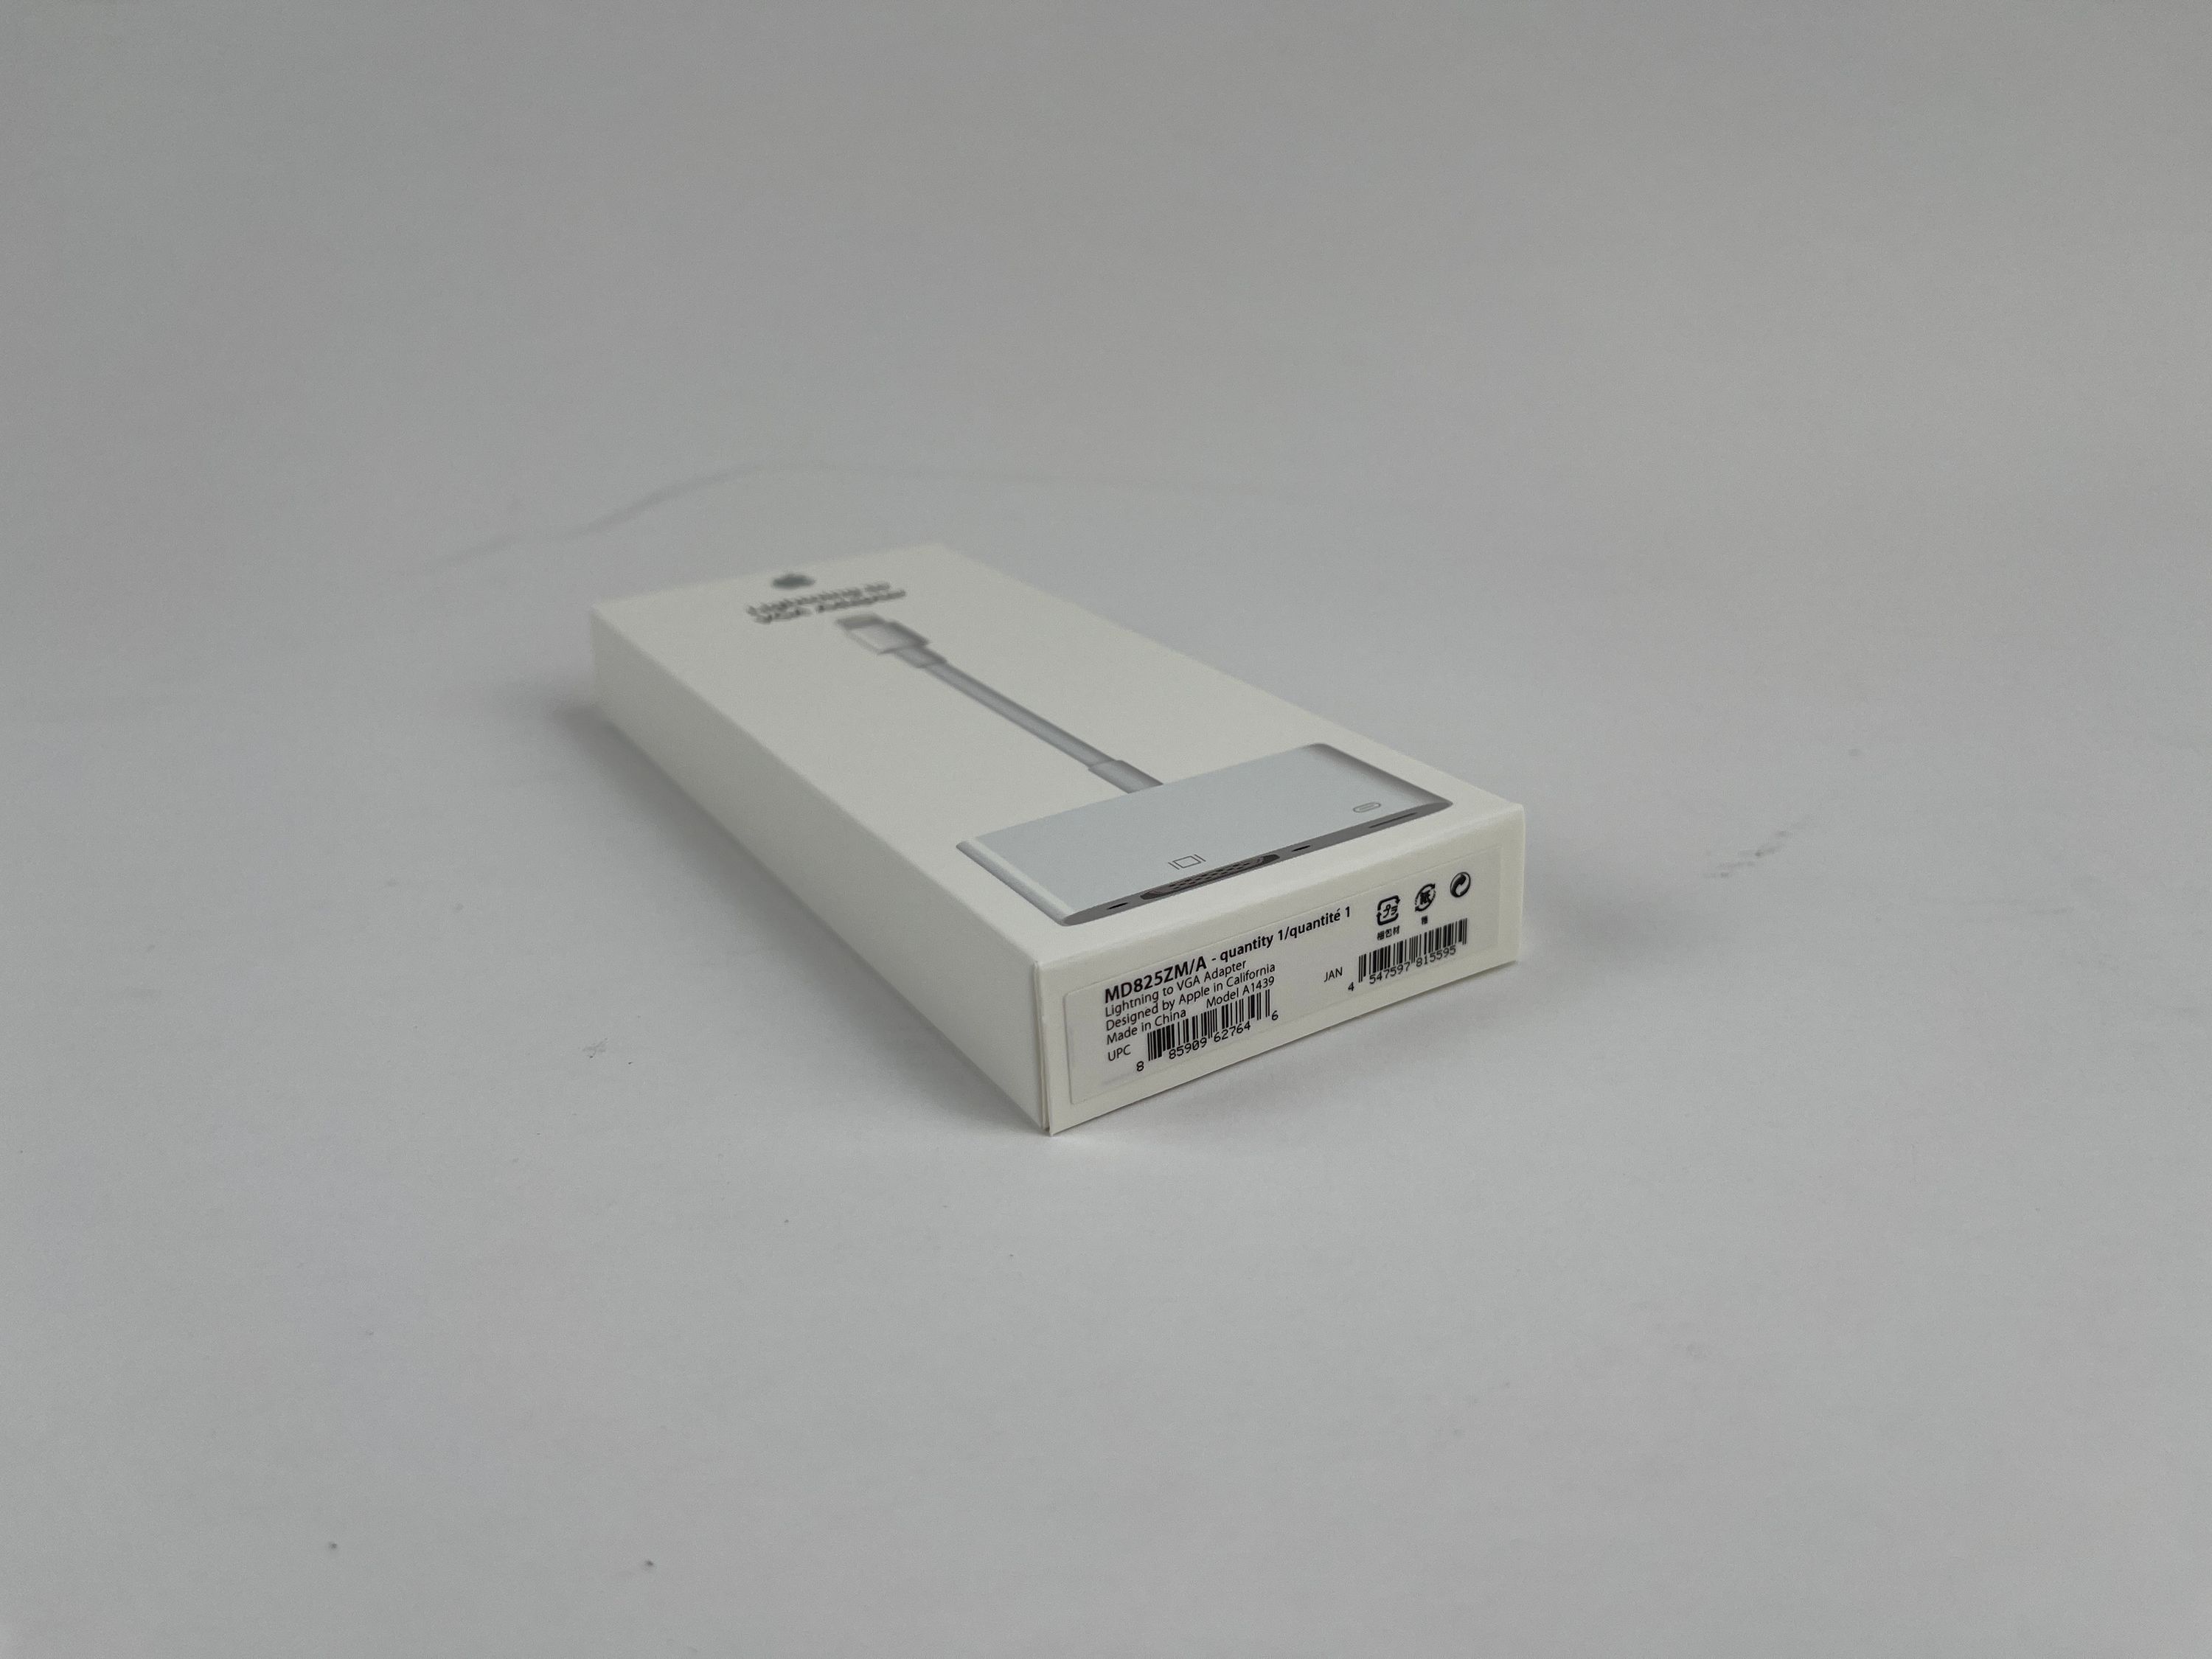 Apple A1439 Lightning zu VGA Adapter MD825ZM/A